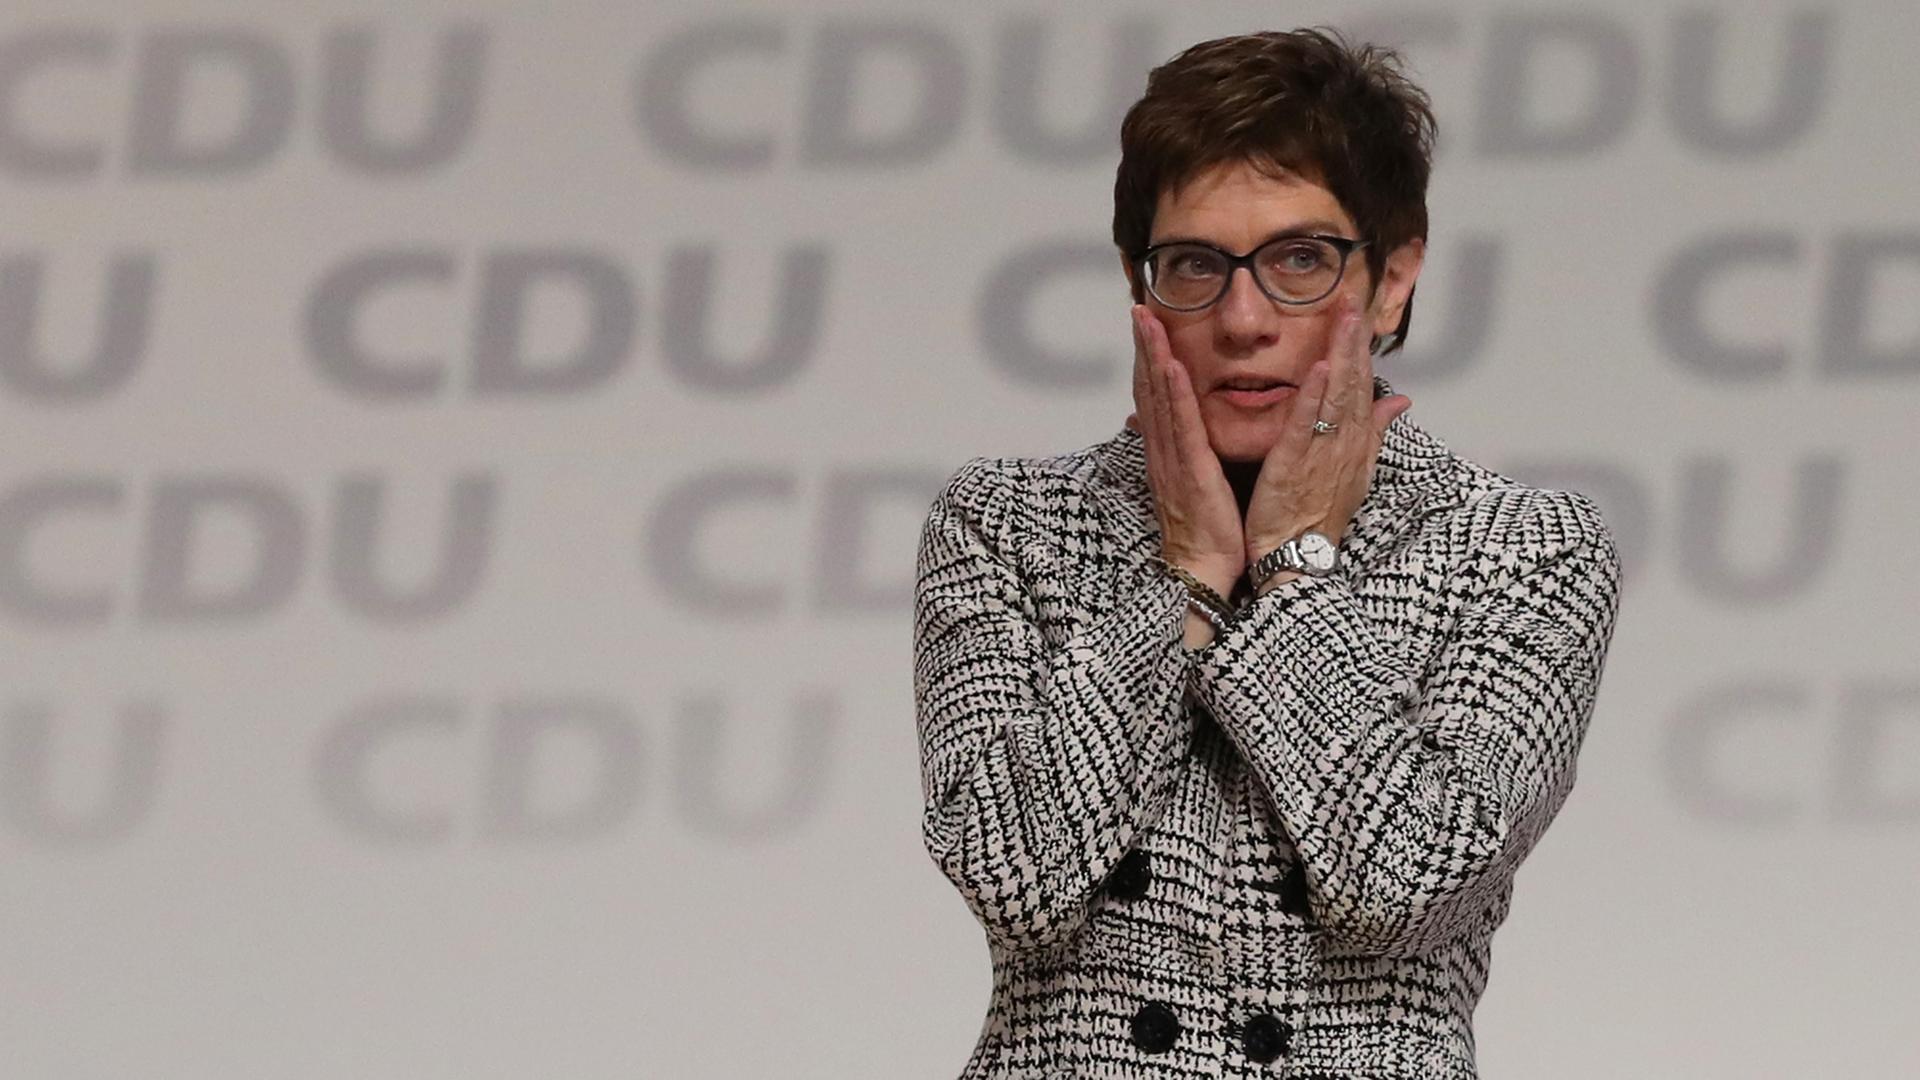 Annegret Kramp-Karrenbauer steht in einem schwarz-weiß-karrierten Sakko auf der Bühne, die Aufschrift "CDU" ist mehrfach hinter ihr zu sehen. Sie hält ihre Hände an ihre Wangen.